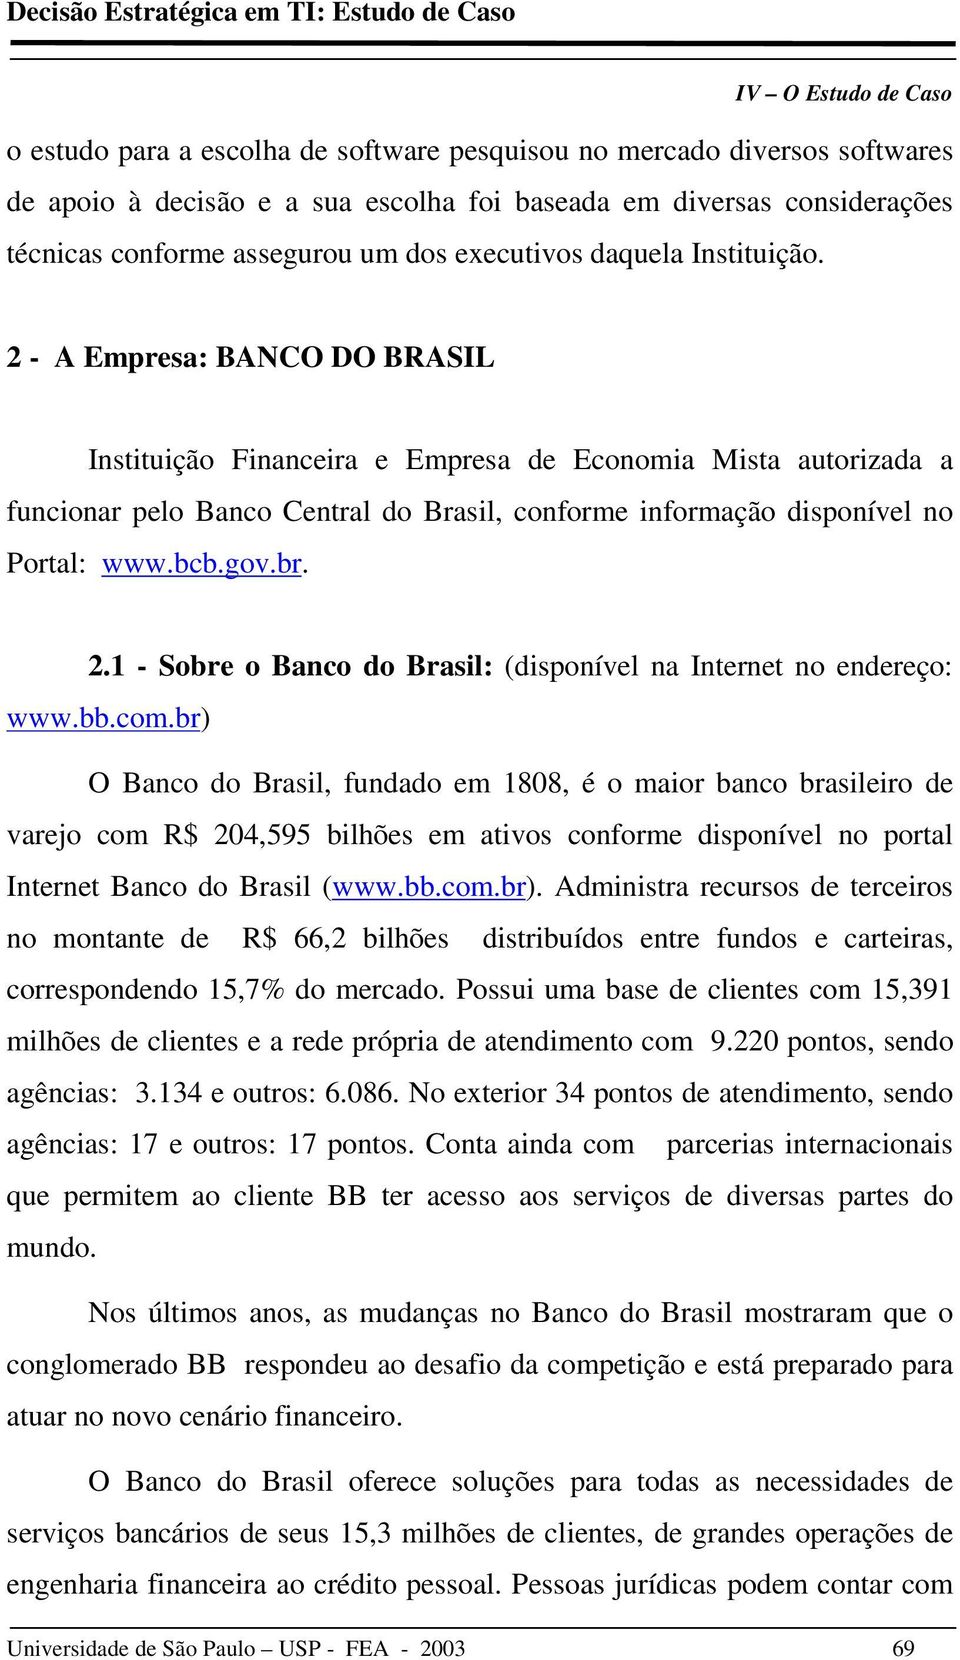 2 - A Empresa: BANCO DO BRASIL Instituição Financeira e Empresa de Economia Mista autorizada a funcionar pelo Banco Central do Brasil, conforme informação disponível no Portal: www.bcb.gov.br. 2.